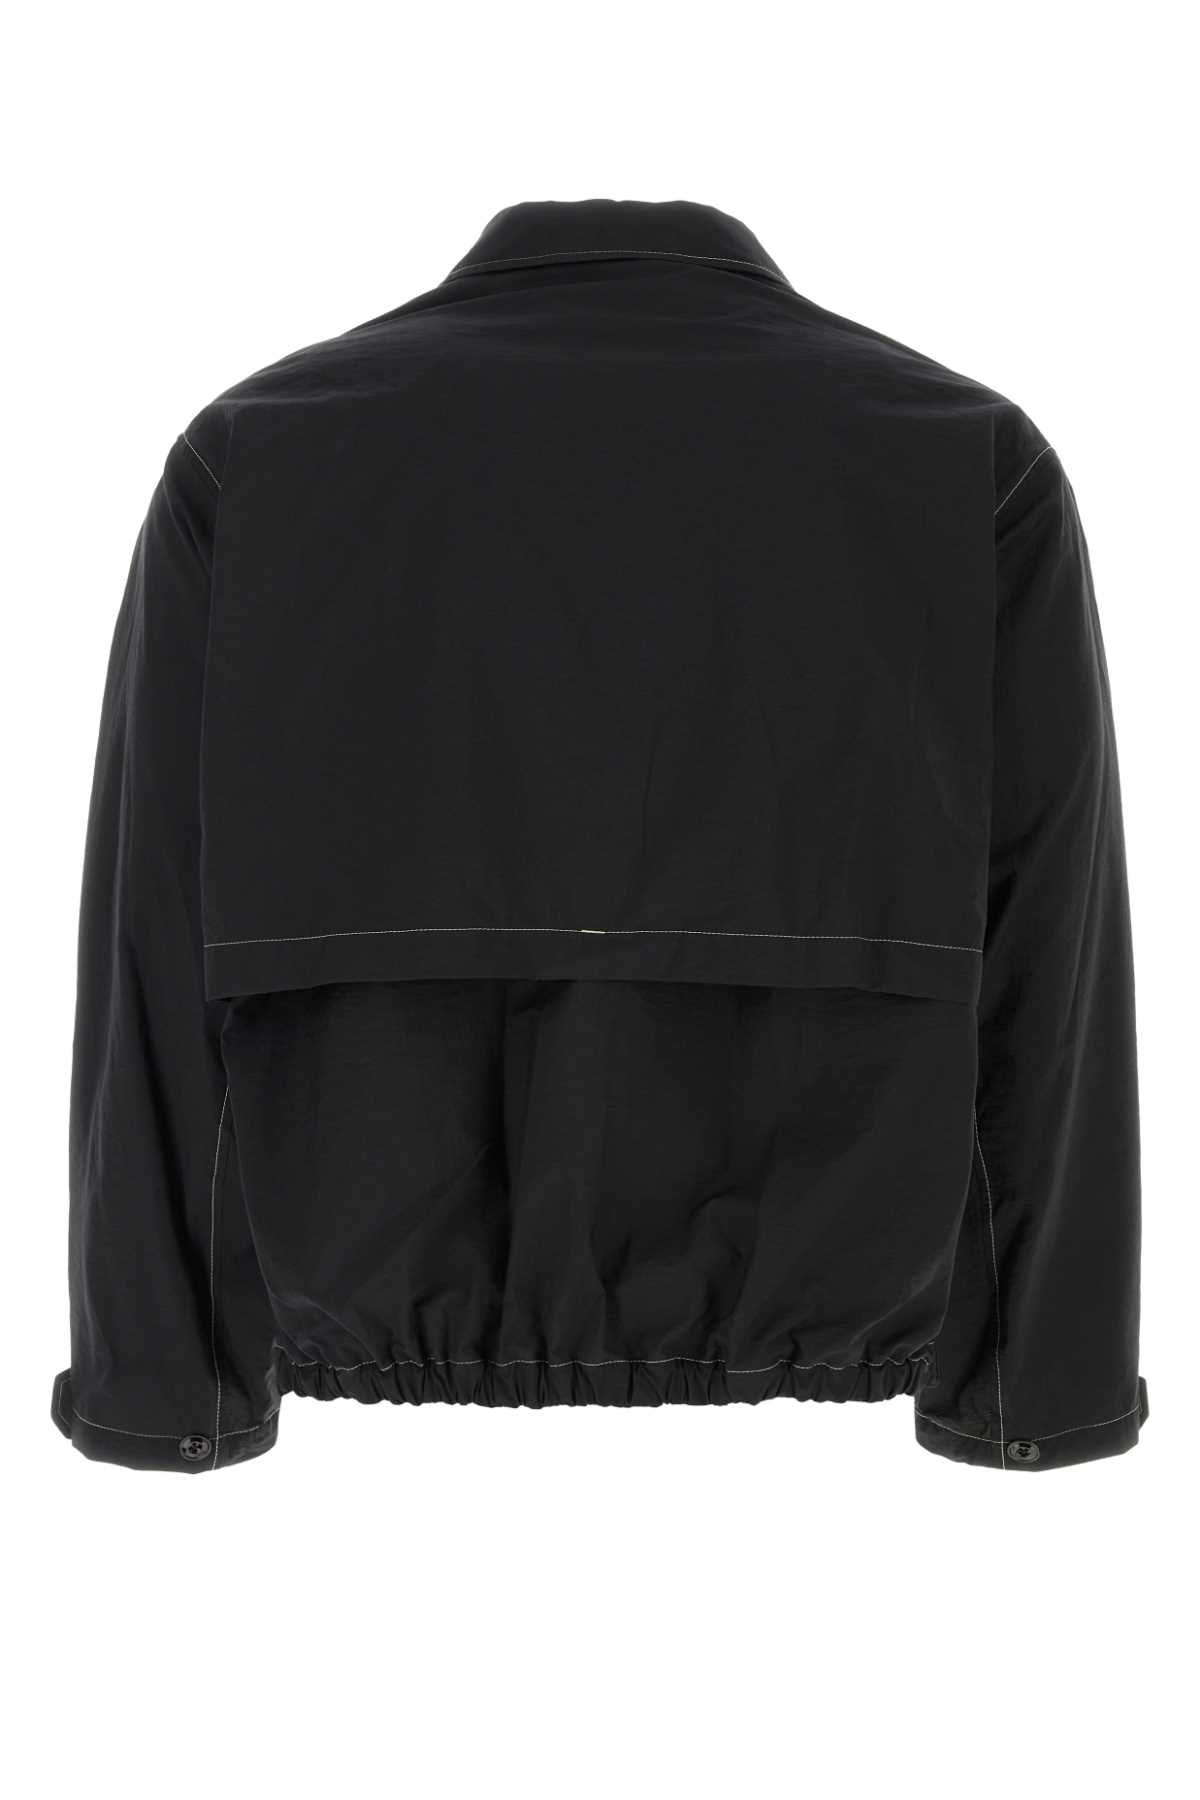 Shop Lemaire Black Cotton Blend Jacket